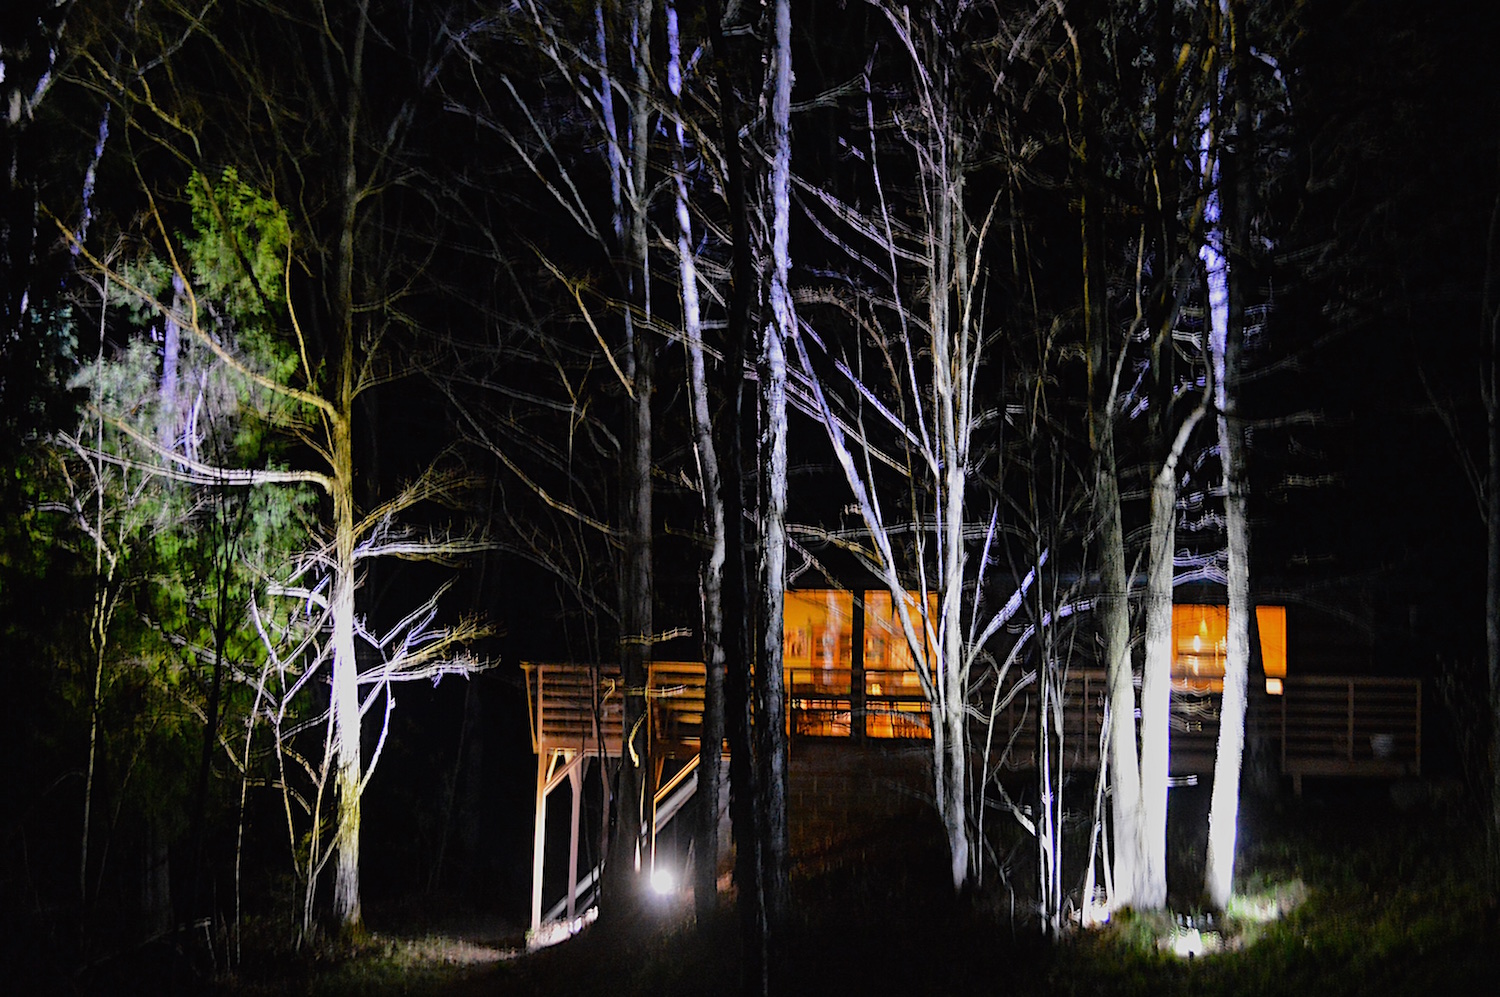  Cabin at night. 